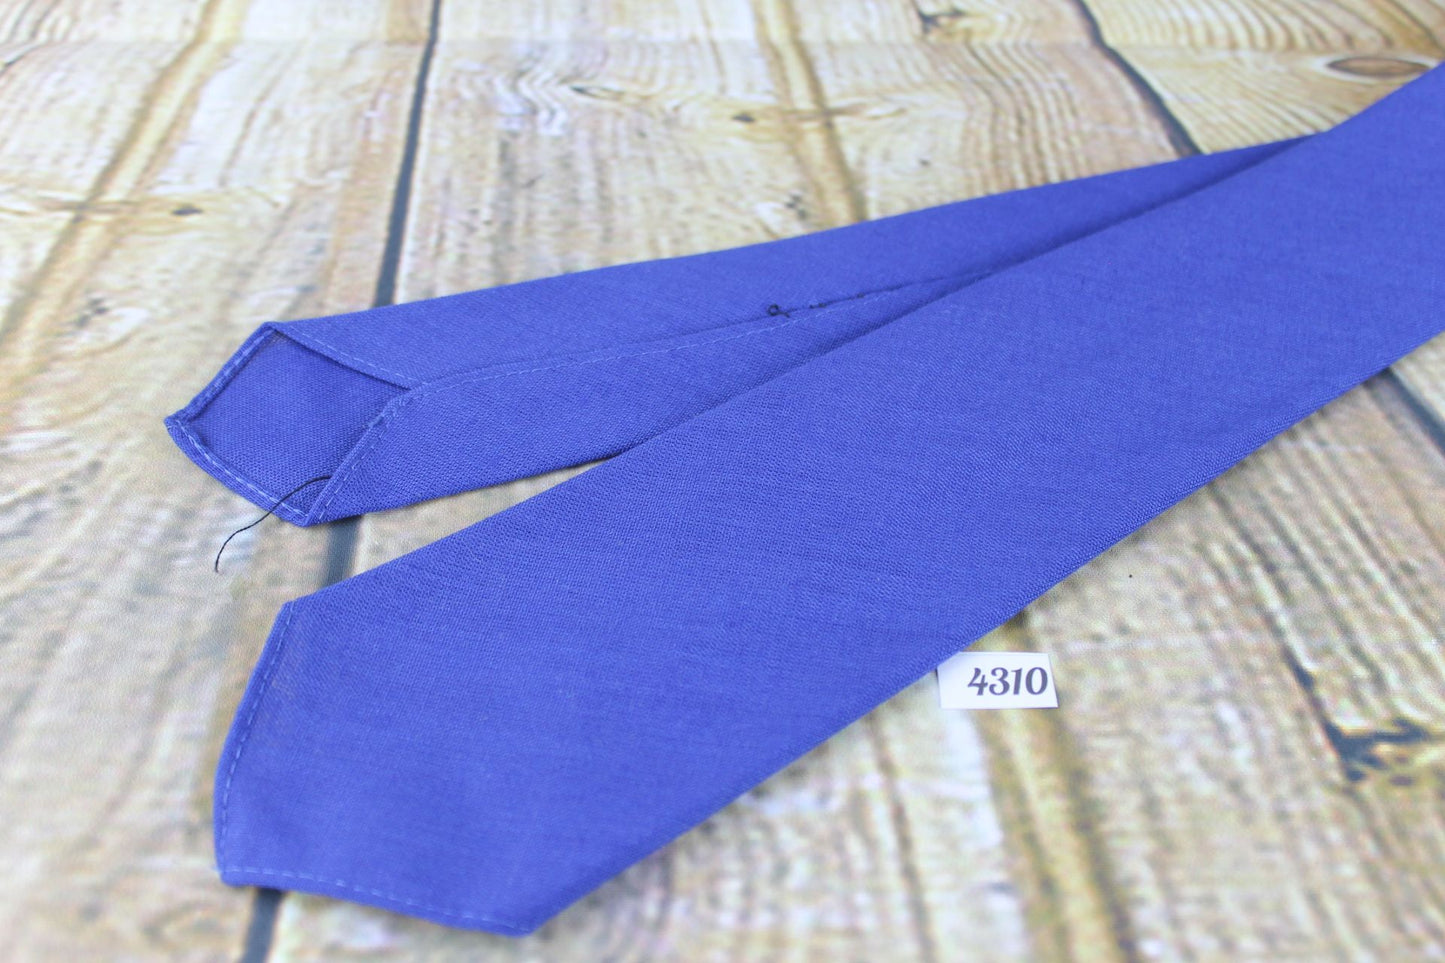 Superb Vintage 1940s/1950s Pilgrim Cravats Plain Classic Blue Tie